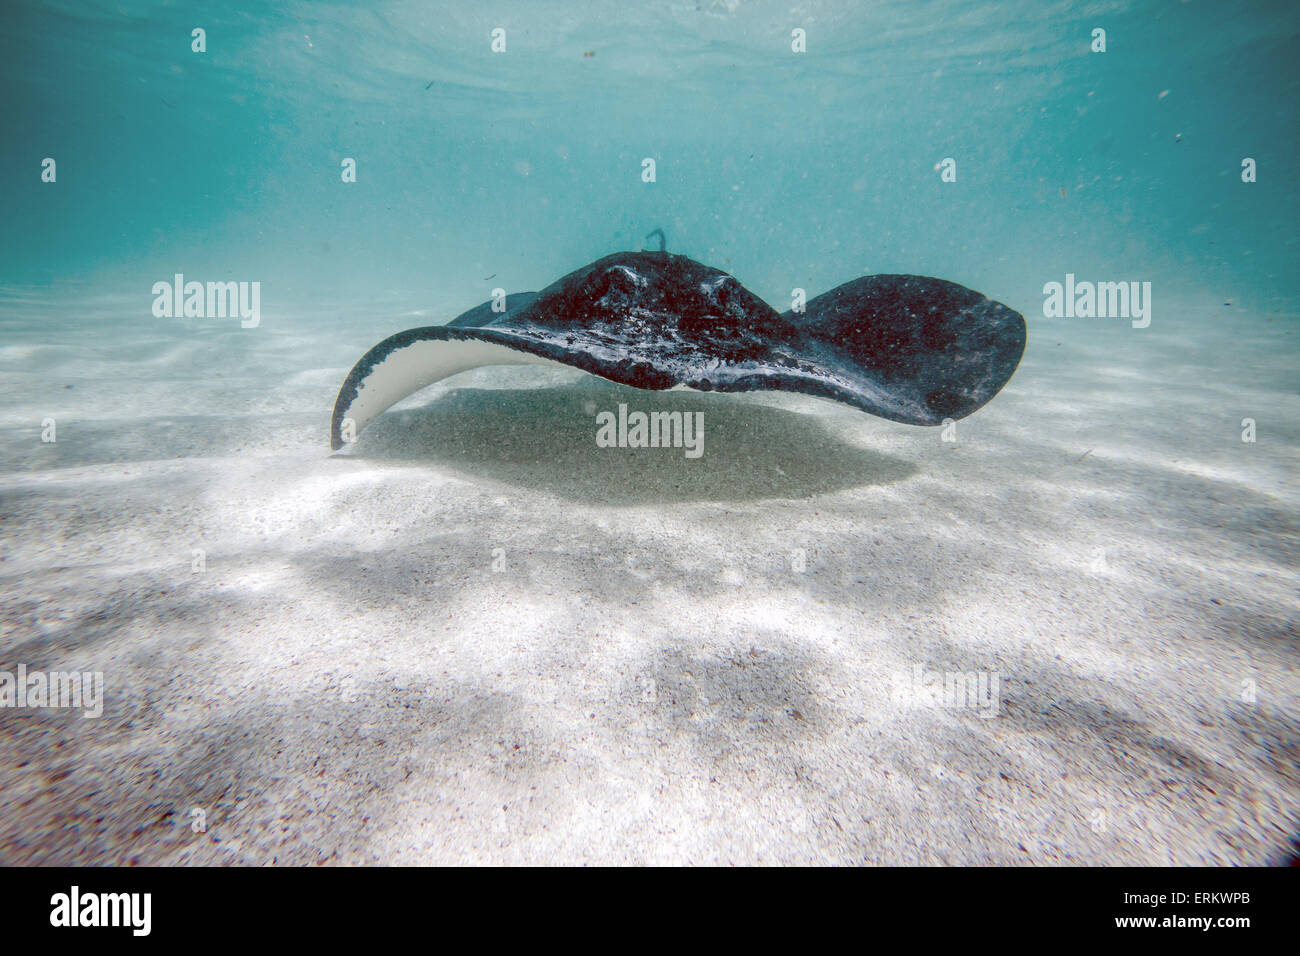 Stingray nager dans la baie de Stingray City un véritable sanctuaire pour les espèces marines, Antigua, Iles sous le vent, West Indies Banque D'Images